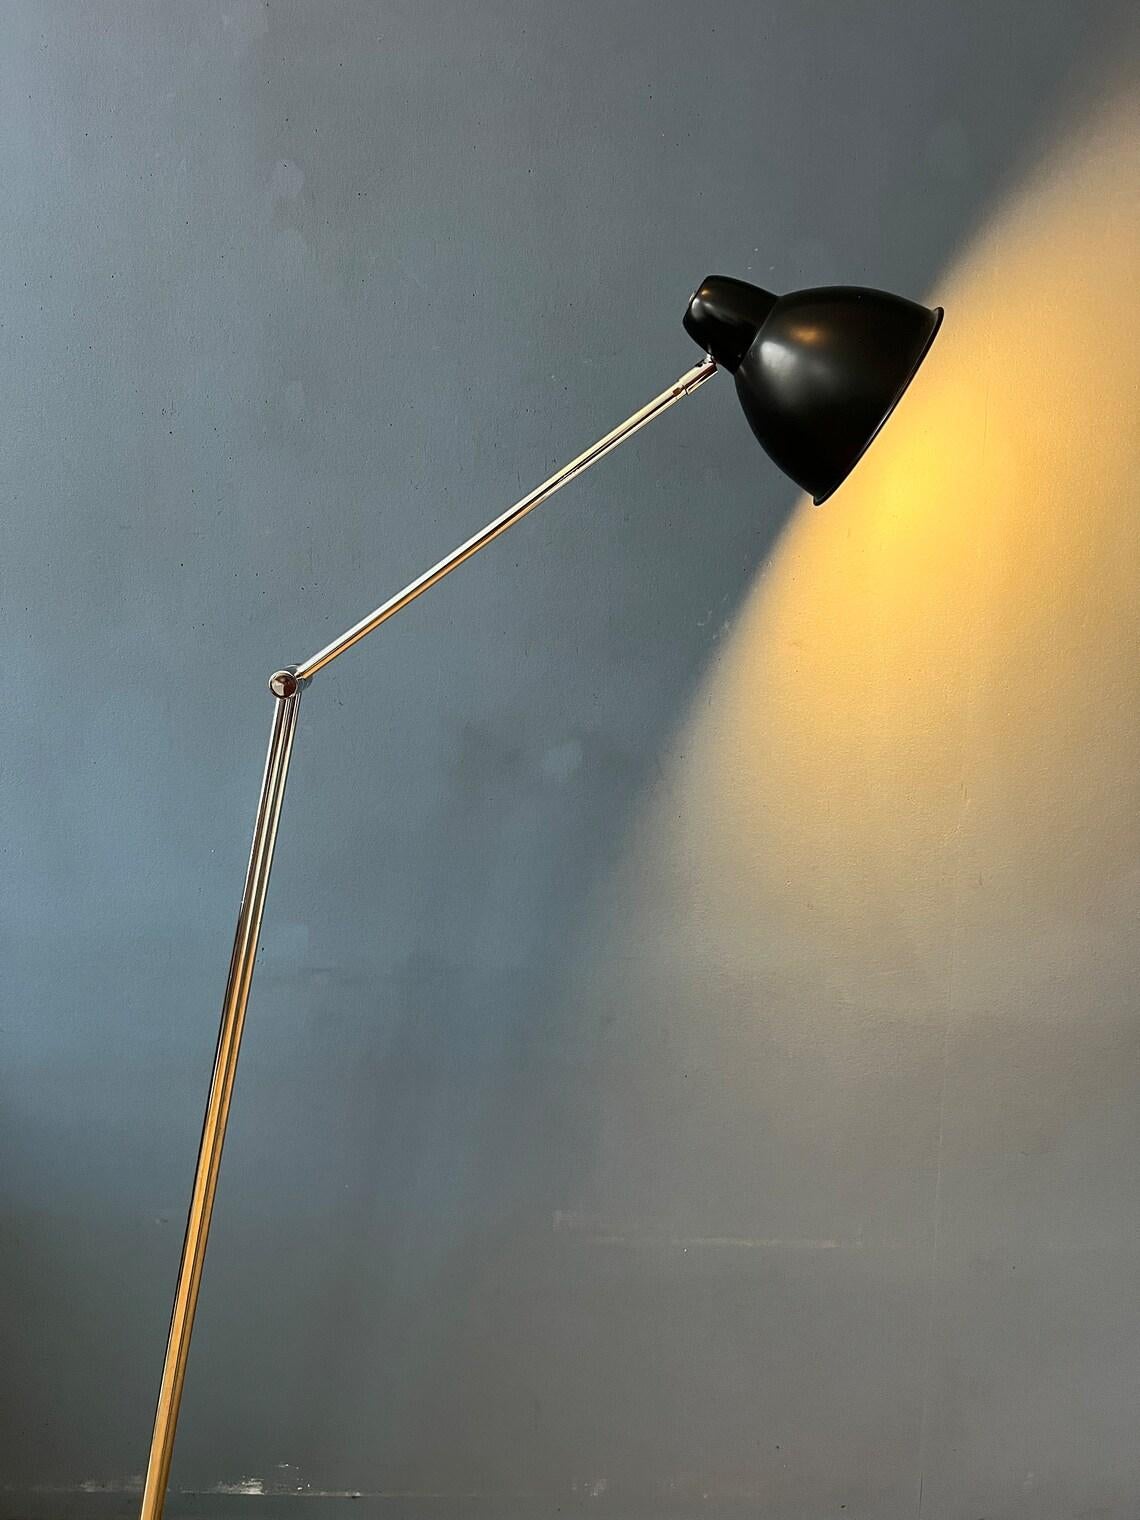 Lampadaire unique du milieu du siècle Hala zeist. La lampe est extrêmement flexible. Il peut être réglé à la base, au milieu du bras chromé et de l'abat-jour lui-même. De cette manière, la lumière peut être positionnée de la manière souhaitée. C'est